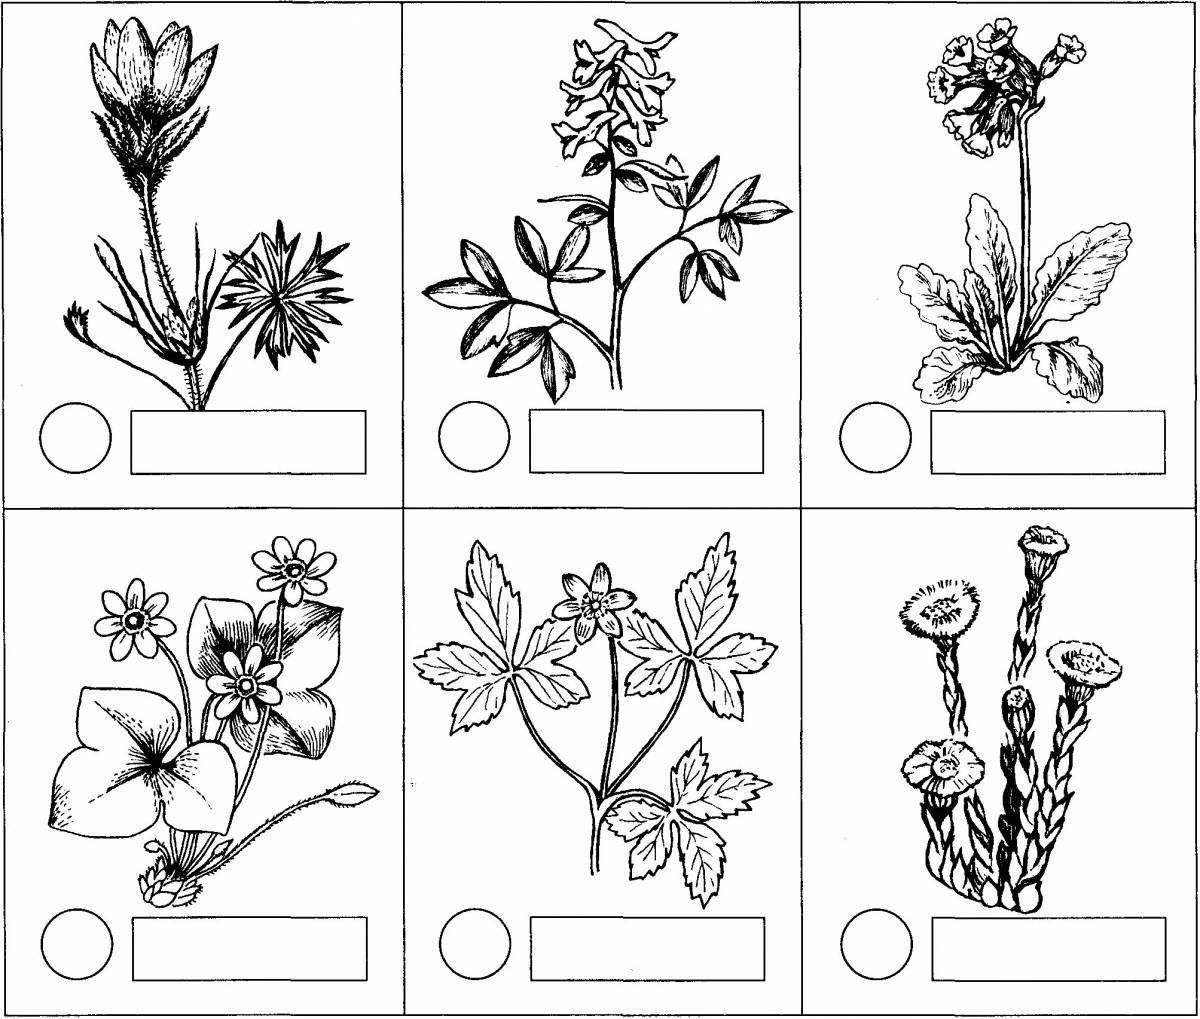 Фото Развлекательная раскраска лекарственных растений с названиями